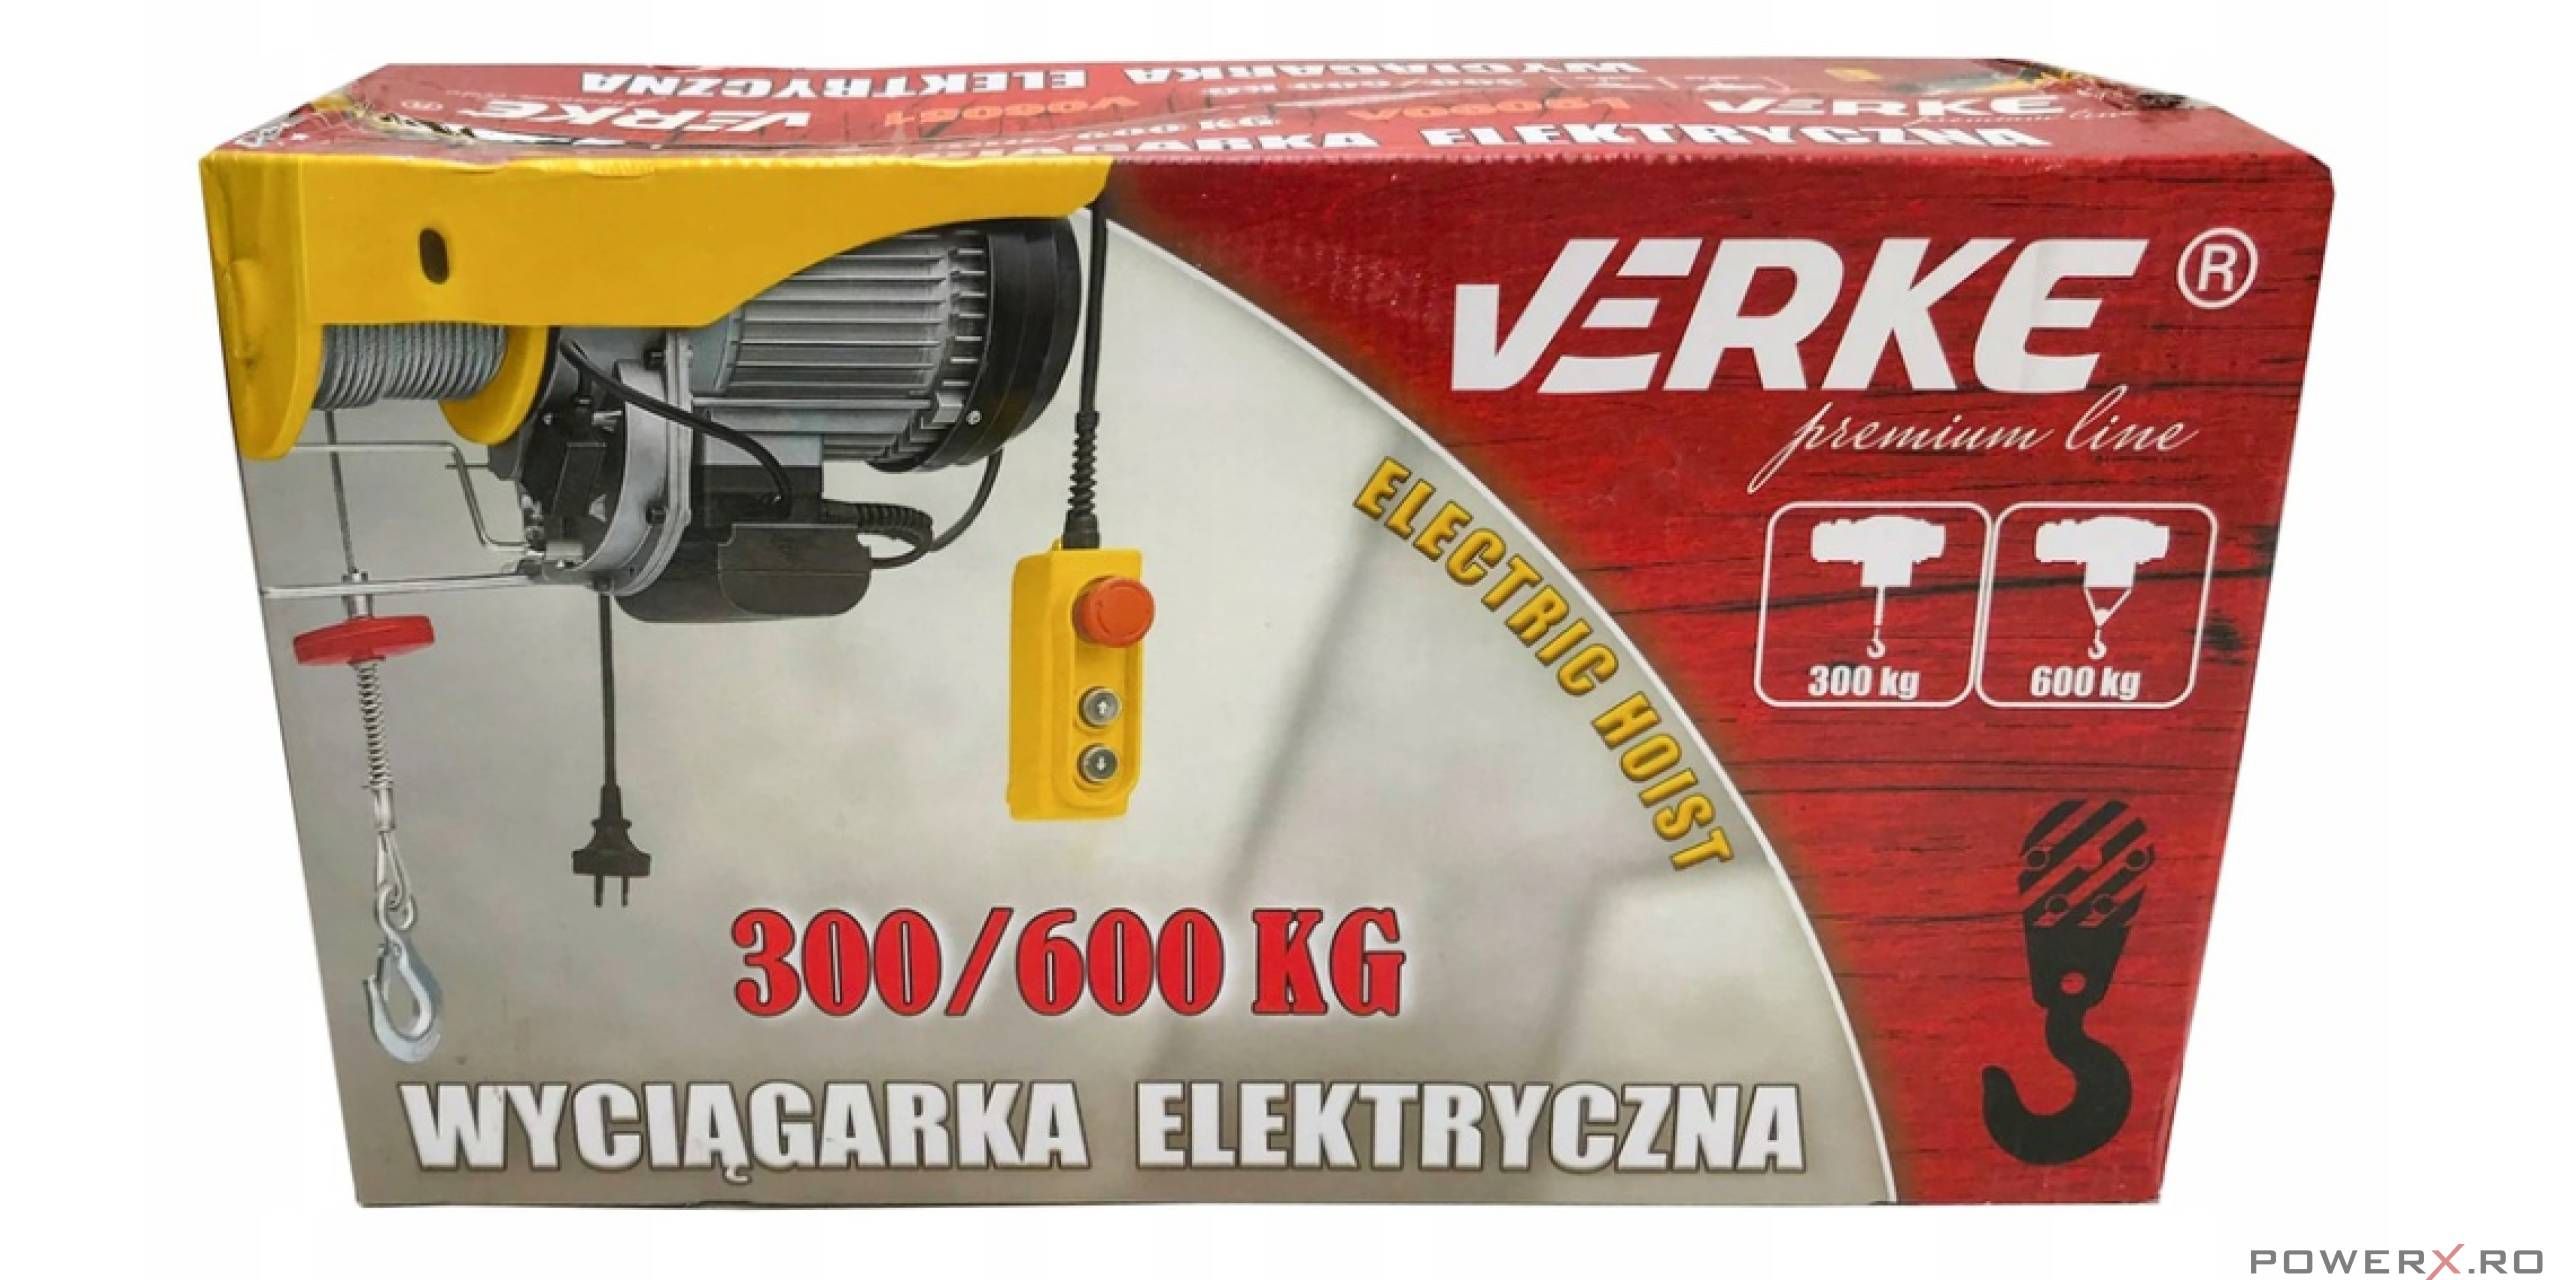 Electropalan 300 / 600 Kg, Macara Electrica, Troliu, Verke